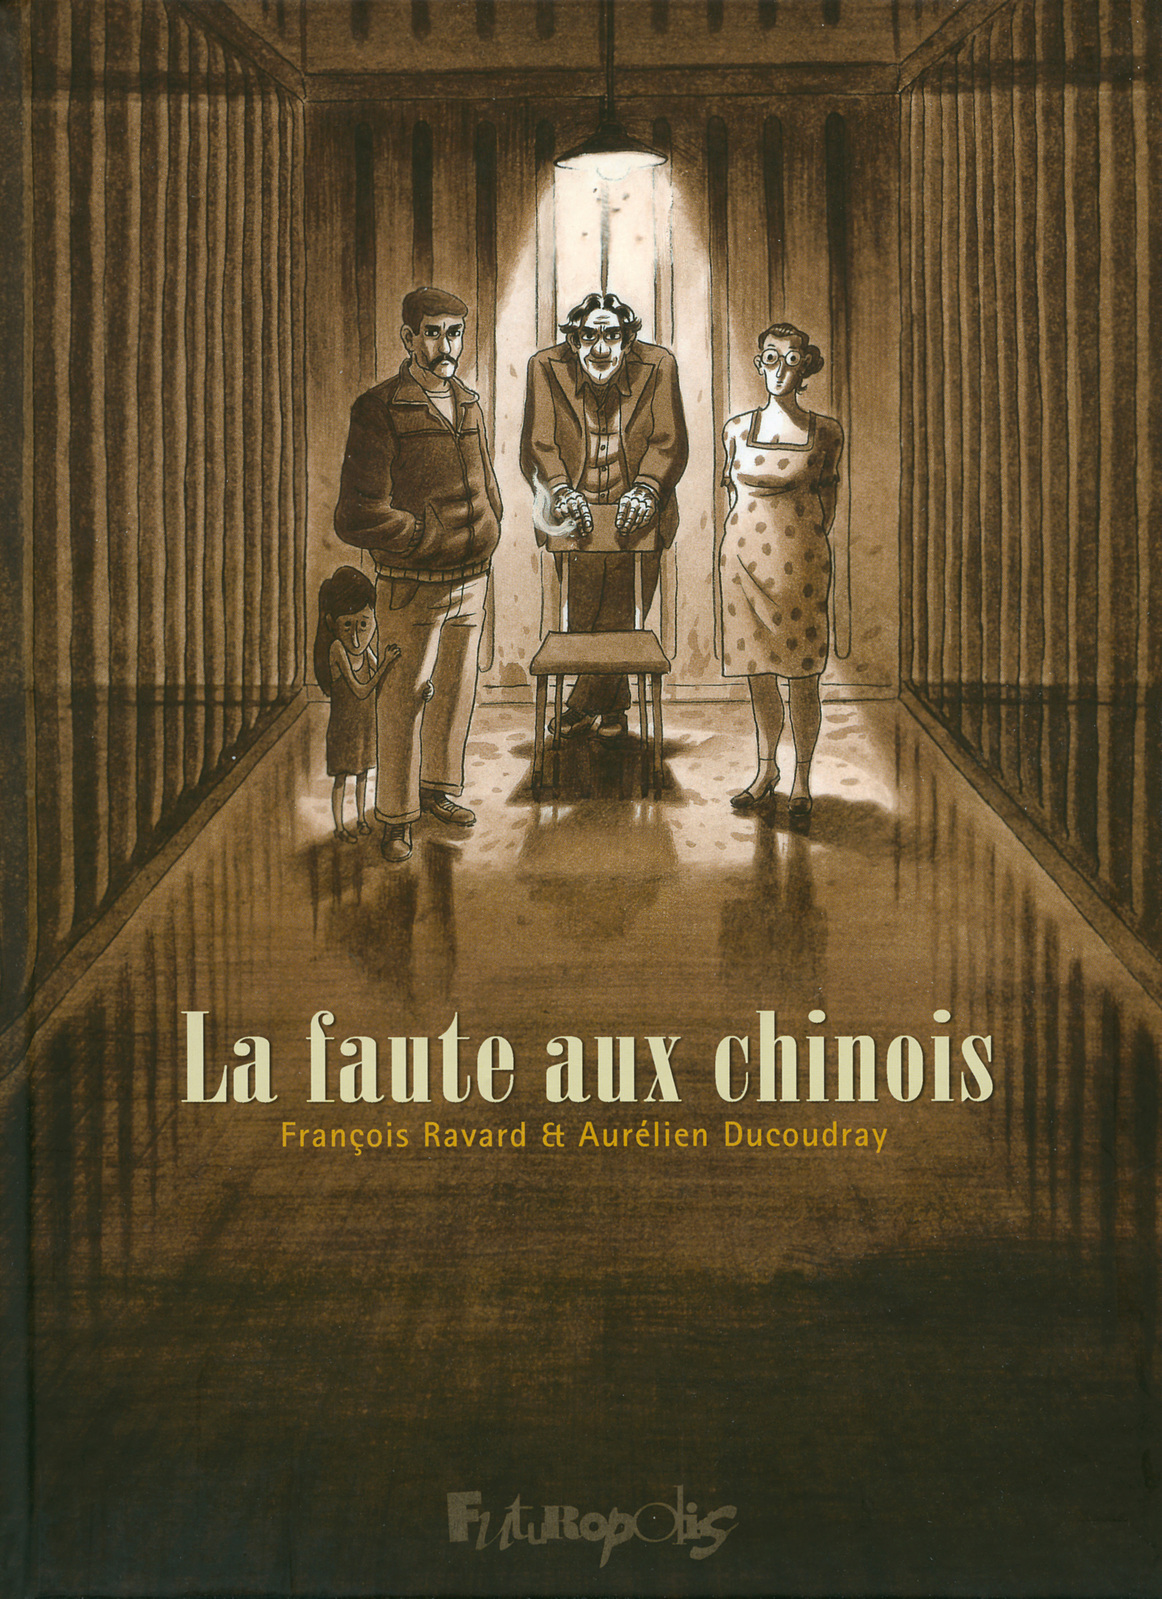 Couverture de l'album "La faute aux Chinois" (Futuropolis, 2011)